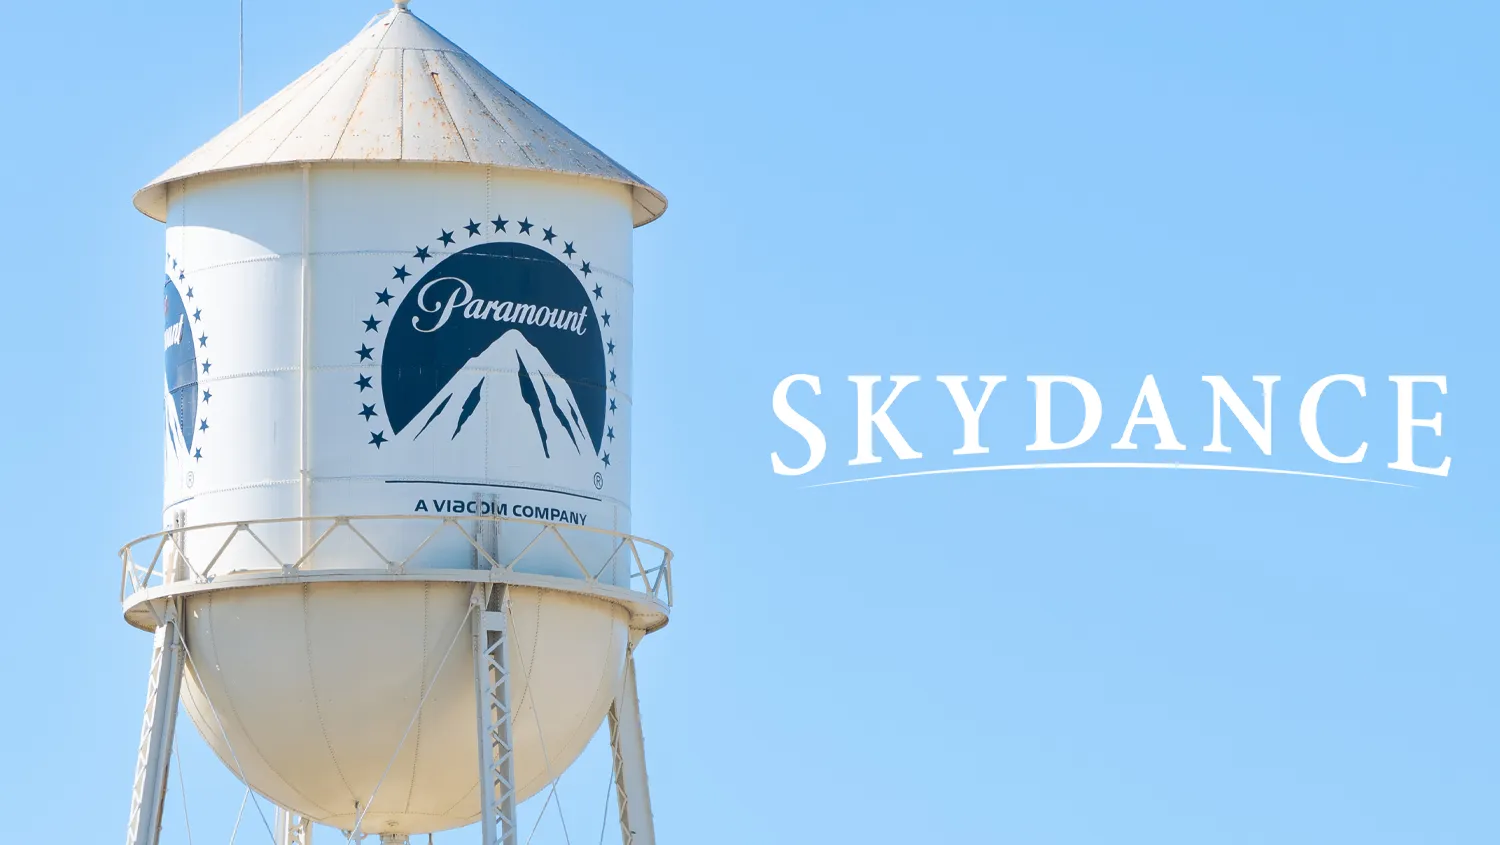 Skydance chính thức kiểm soát Paramount với 8 tỉ USD